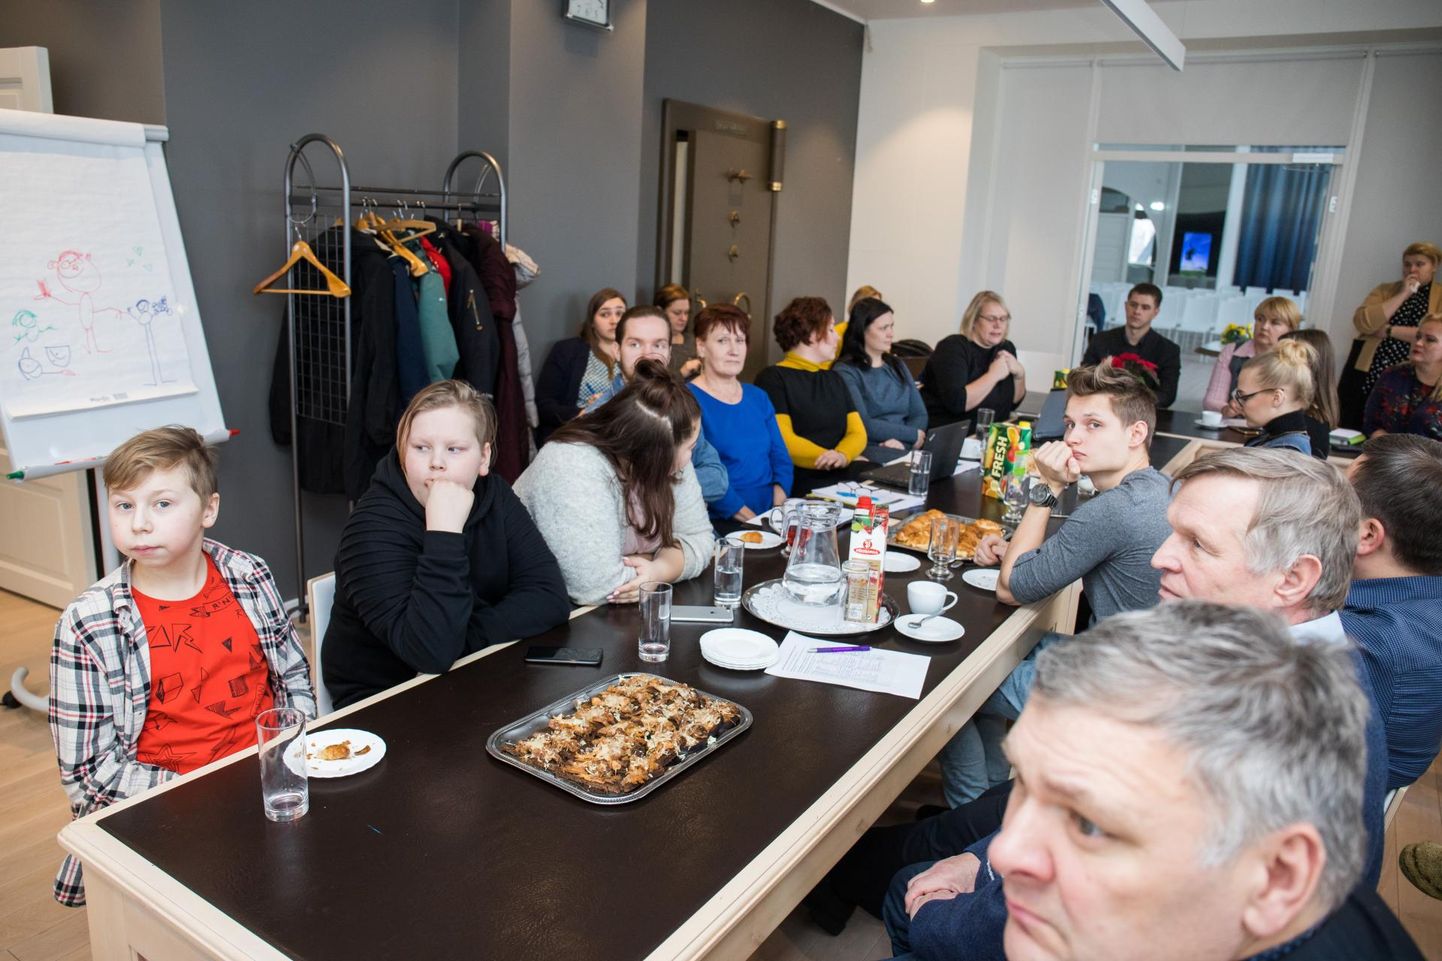 Nädal tagasi arutasid Rakvere linnavalitsuse saalis noorsootöö ja noortekeskuse tuleviku üle peamiselt pisut vanemad inimesed, noori oli vaid käputäis.